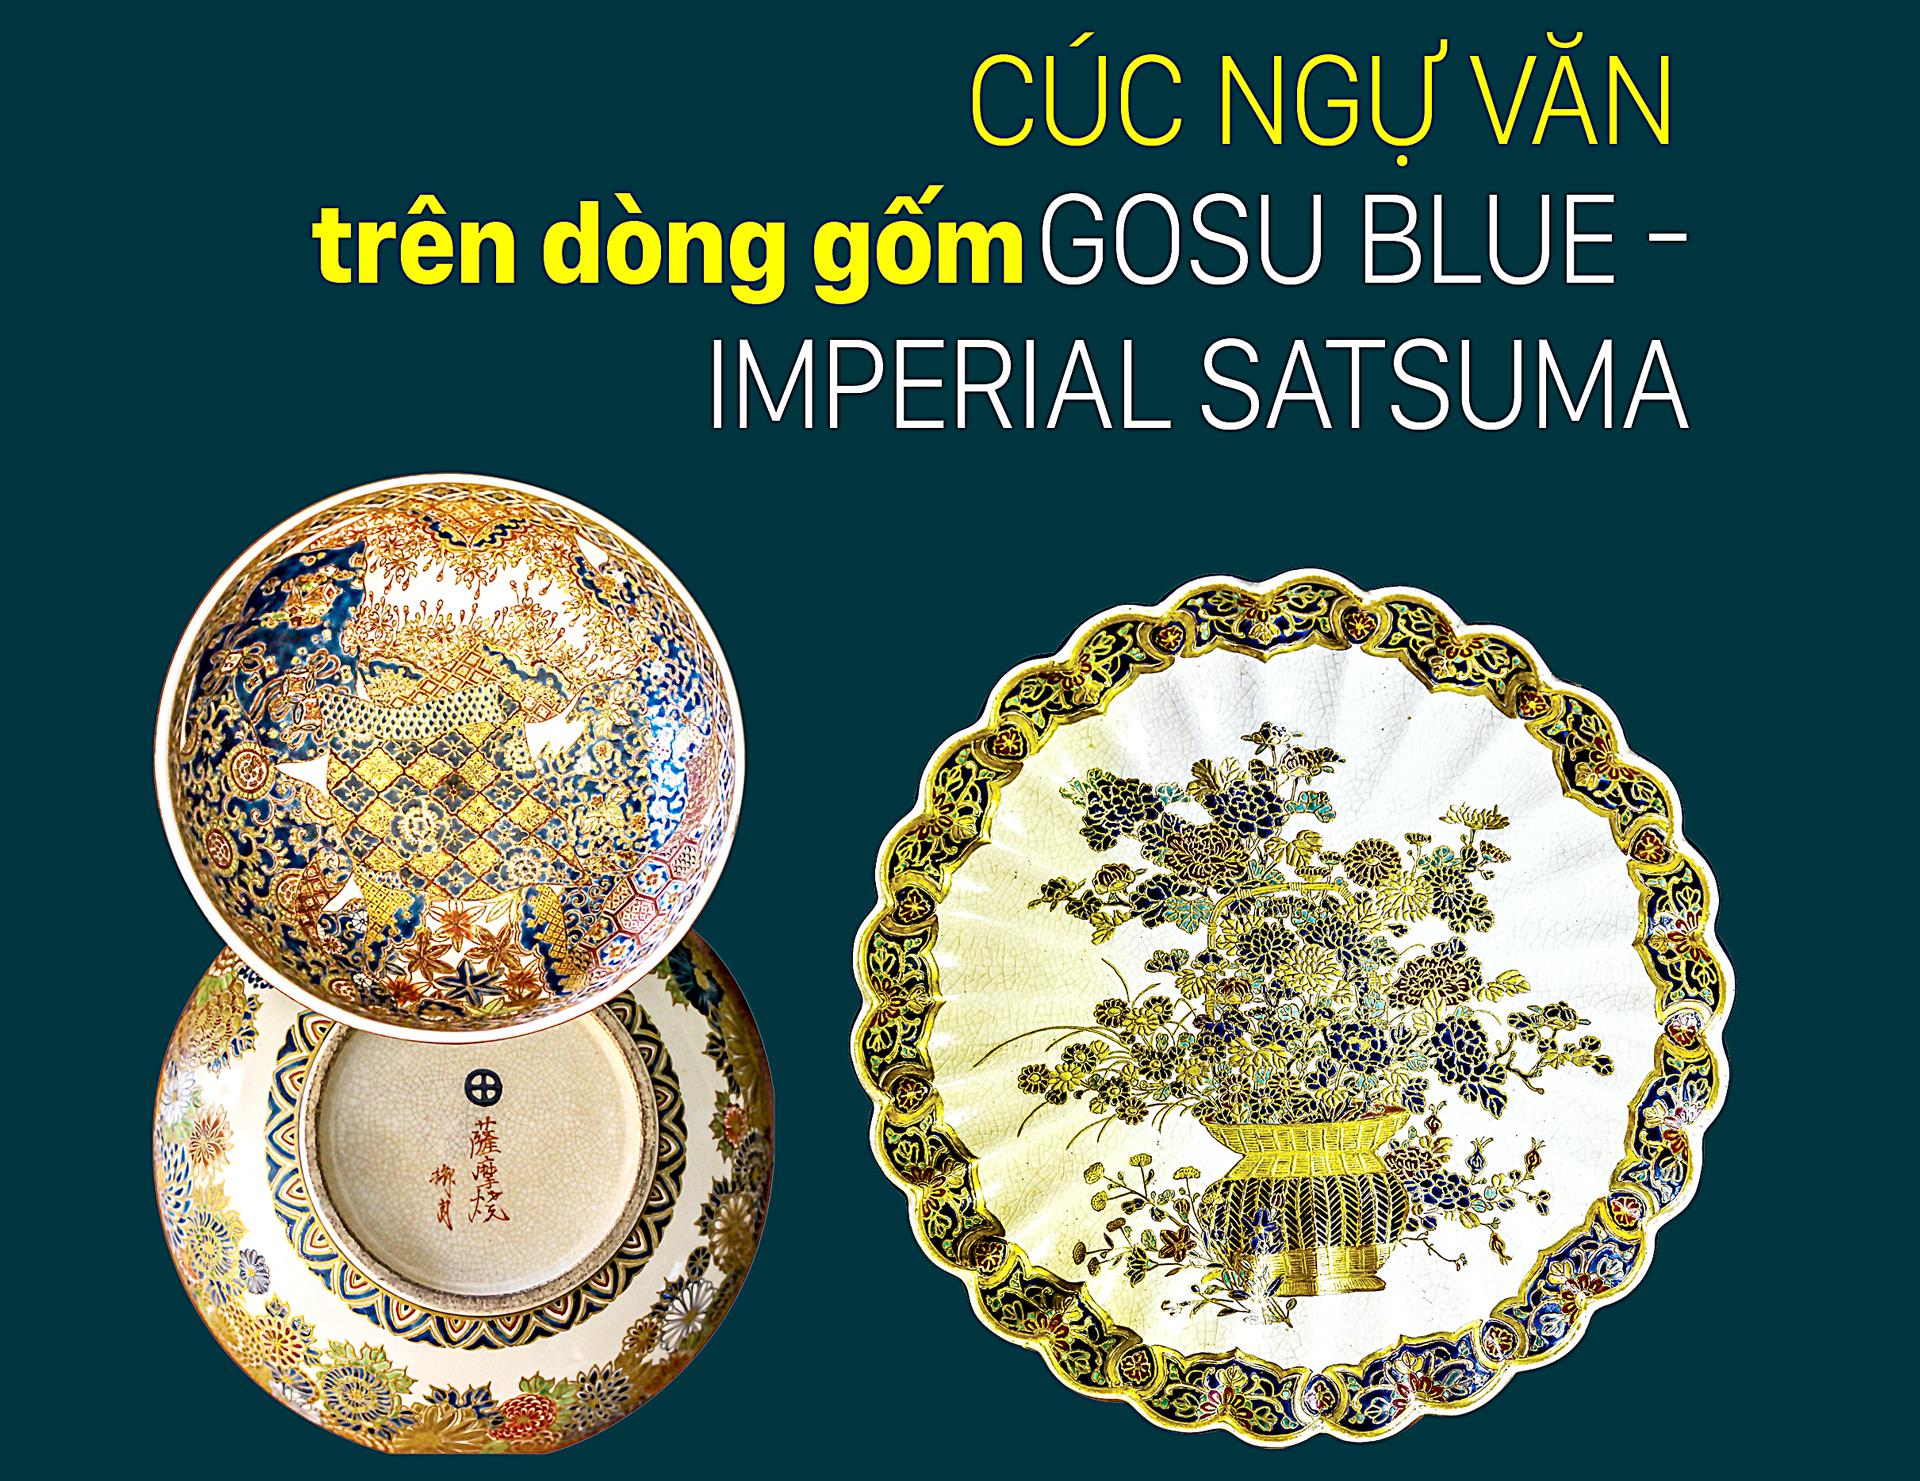 Cúc Ngự Văn trên dòng gốm Gosu Blue - Imperial satsuma